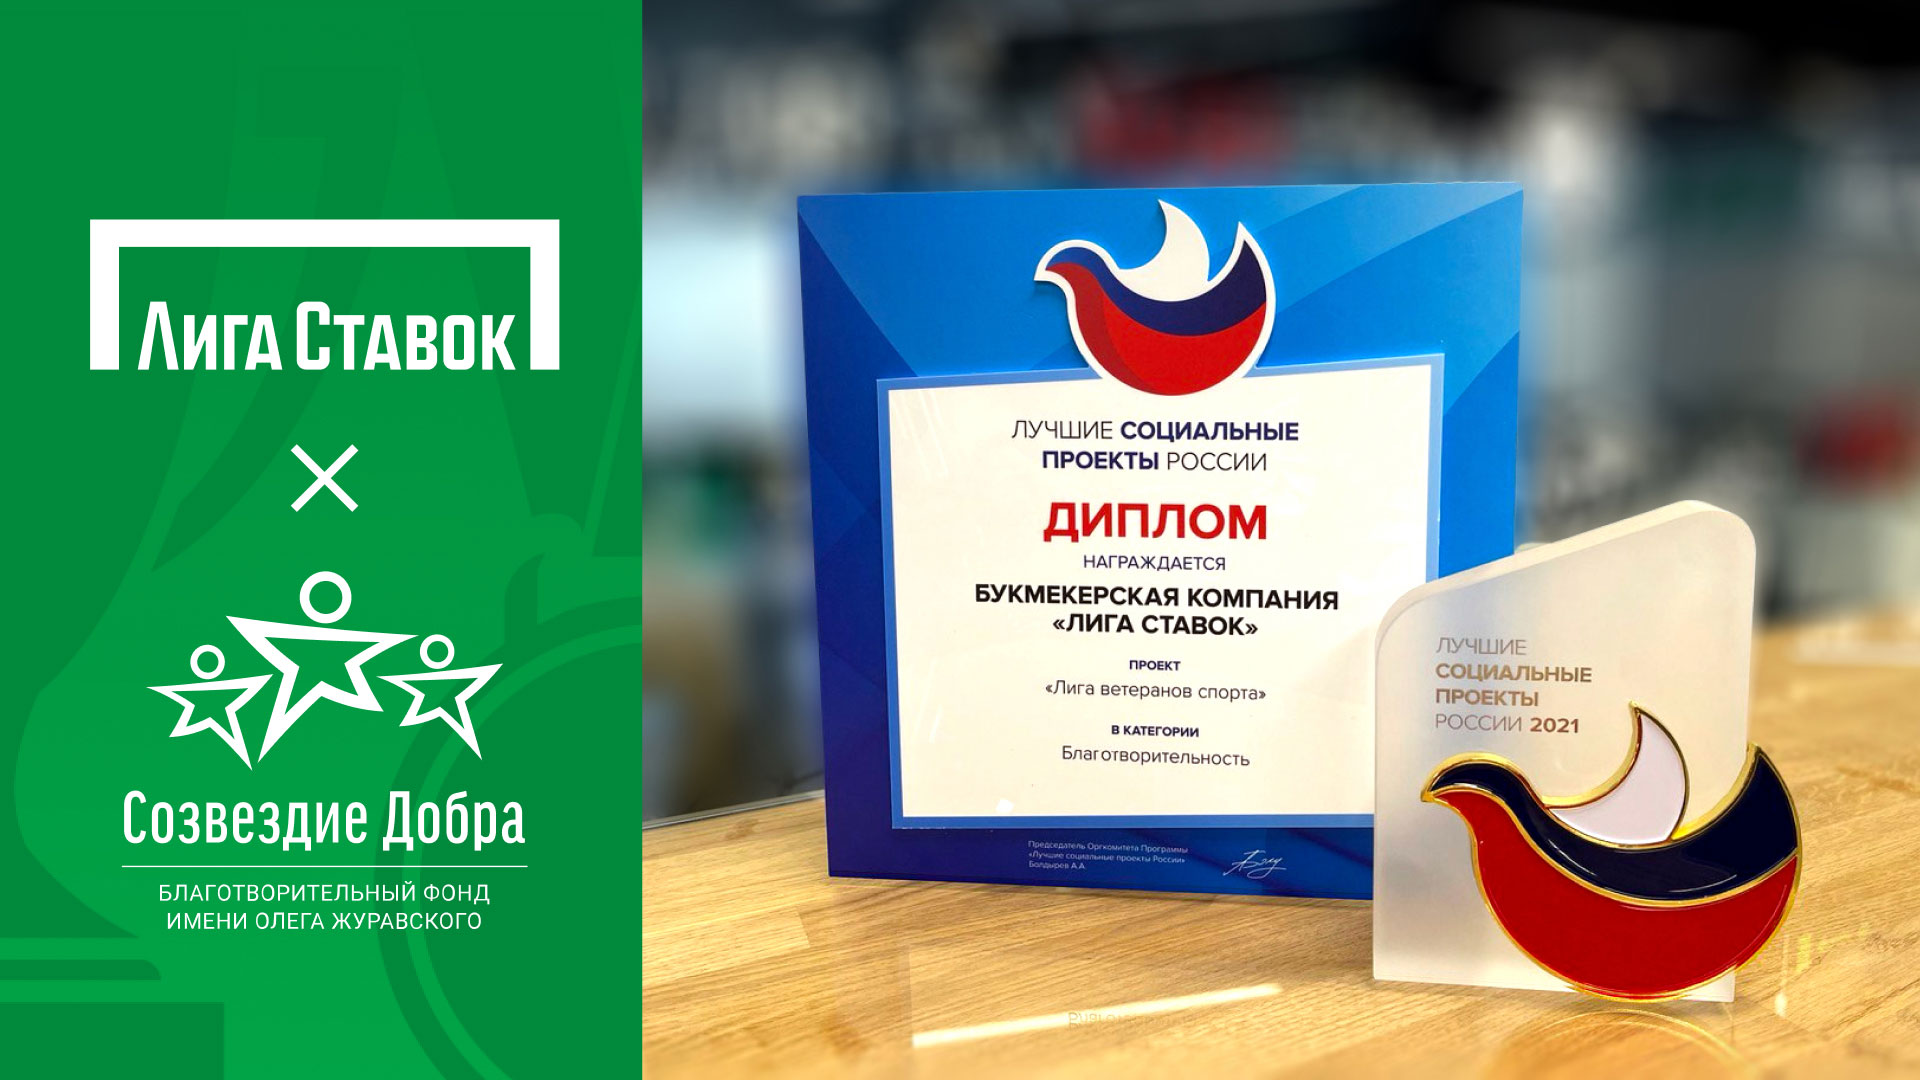 «Лига ветеранов спорта» признана лучшим социальным проектом России